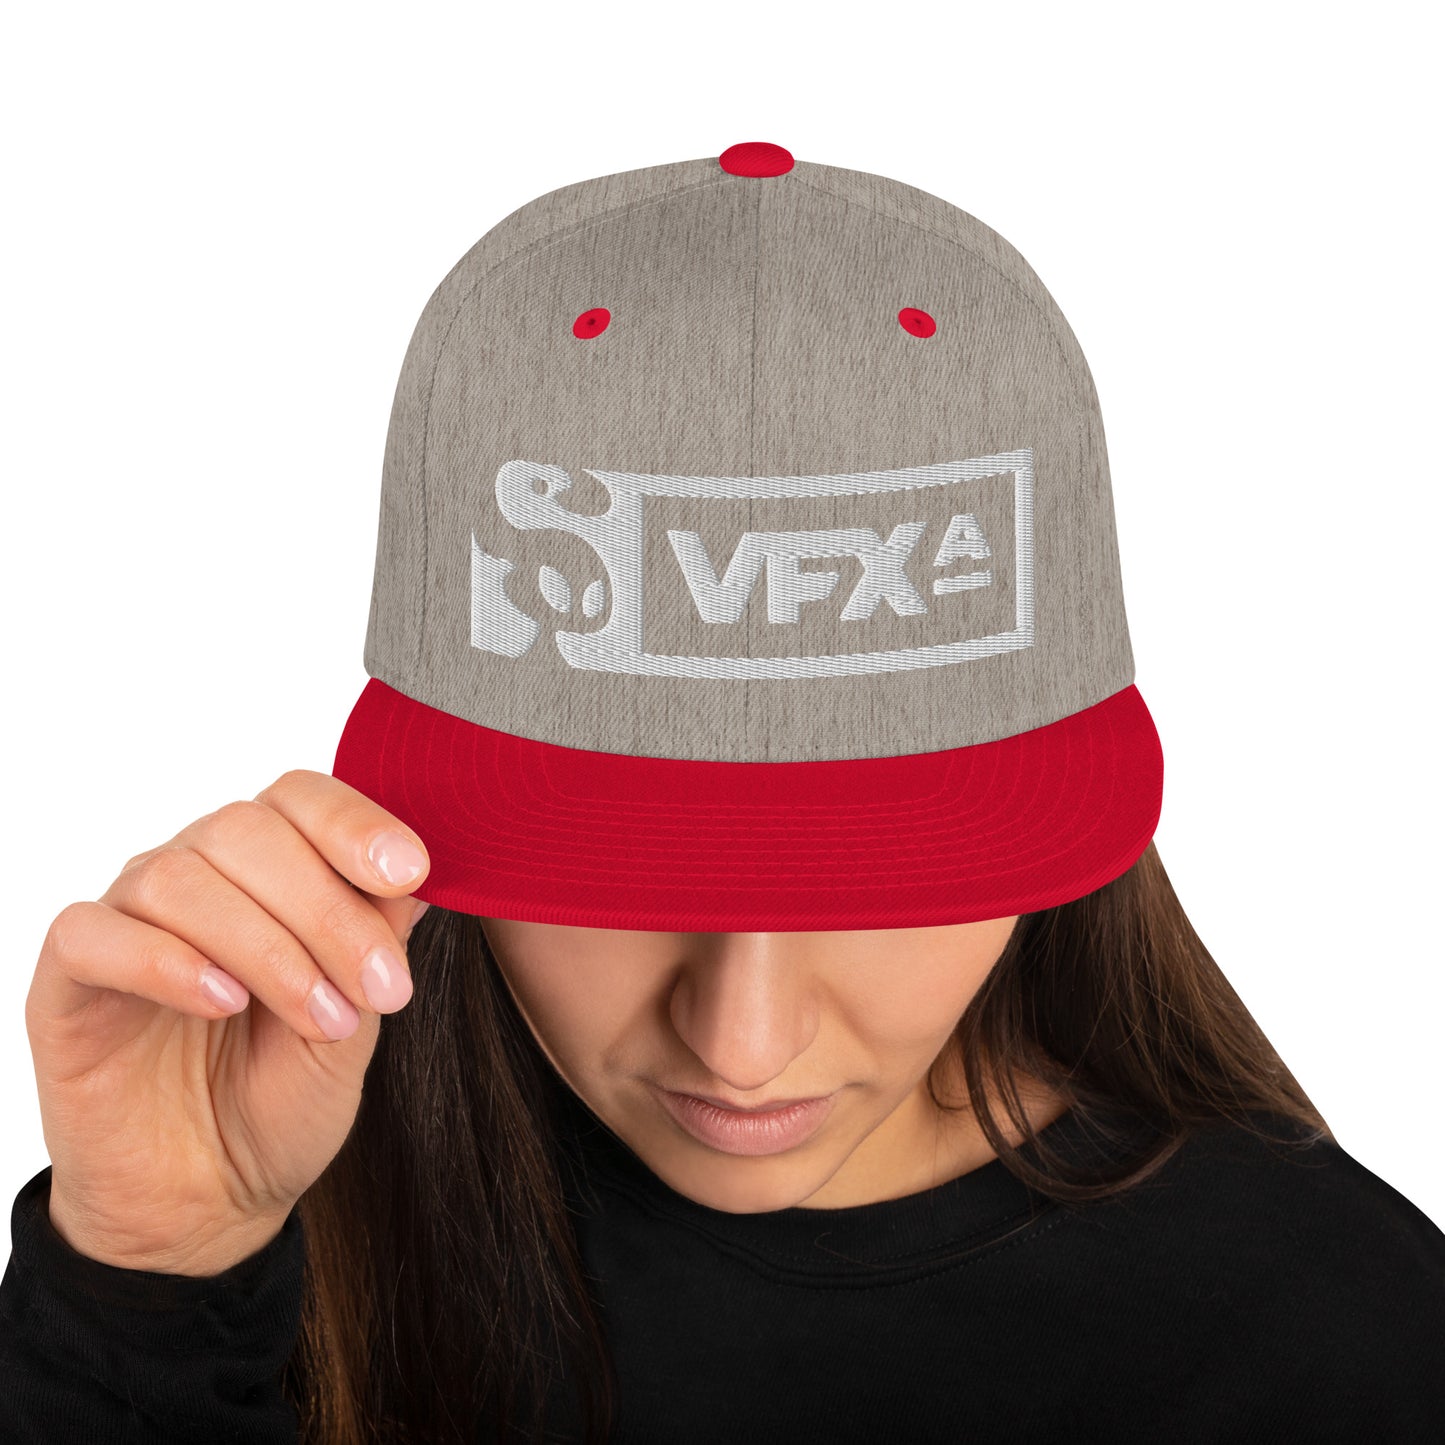 Snapback Hat: Light VFX-A Logo